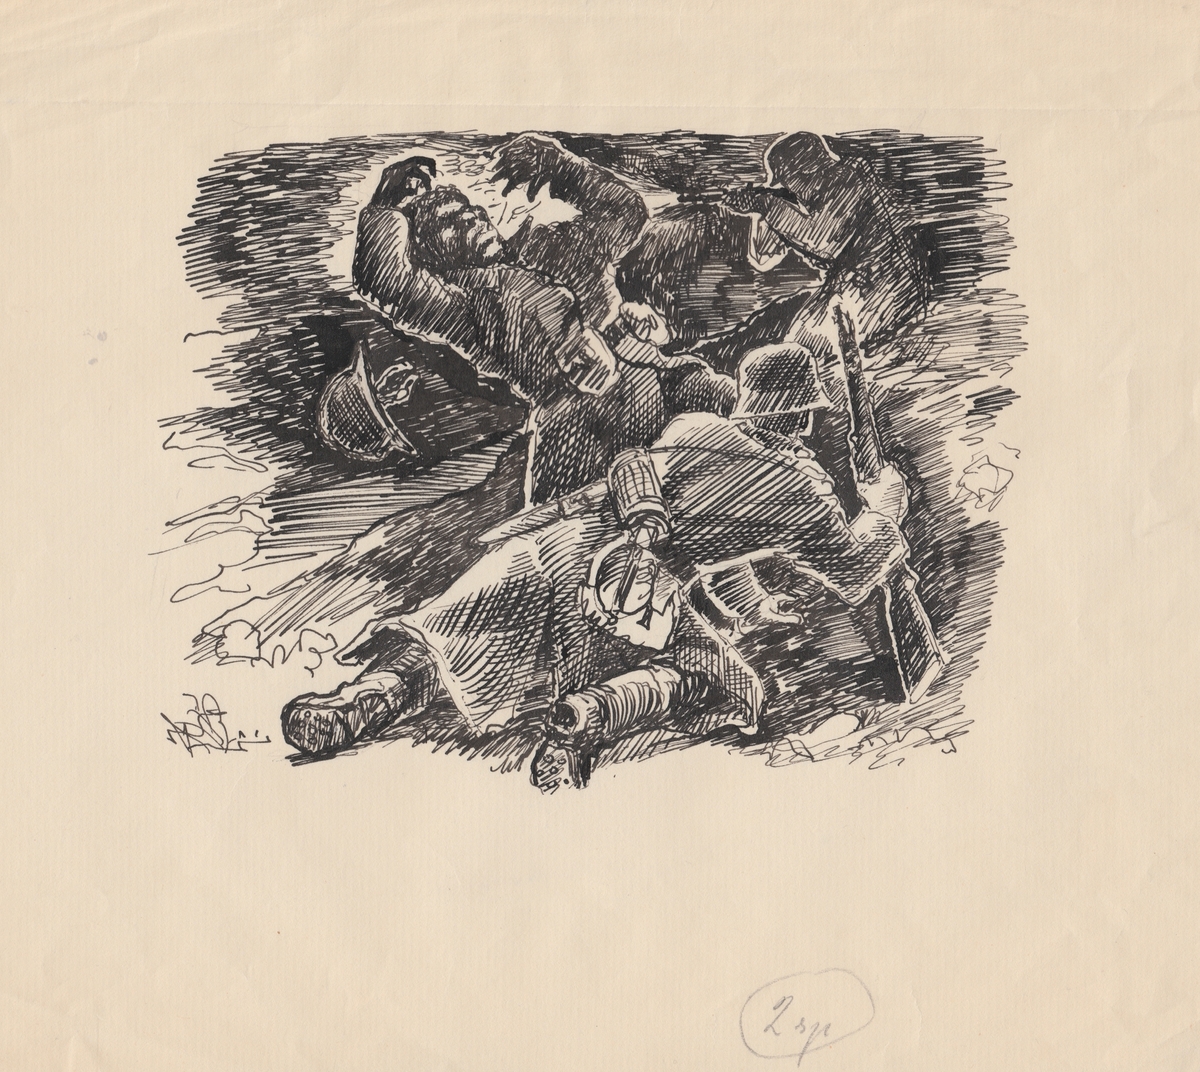 Tegning som viser en krigsscene med tre soldater i kamp.